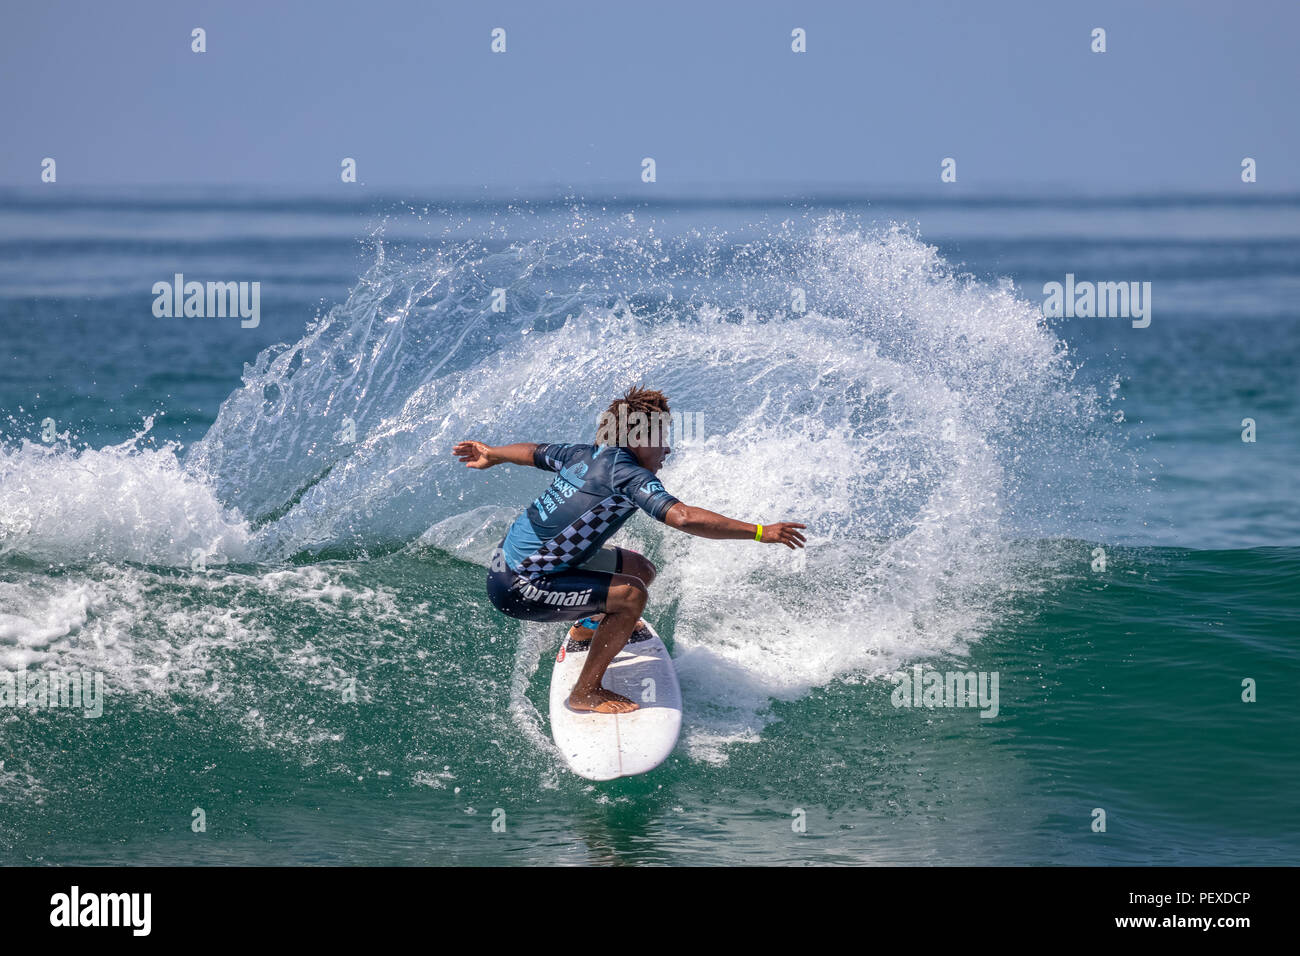 David do Carmo en compétition dans l'US Open de surf 2018 Banque D'Images